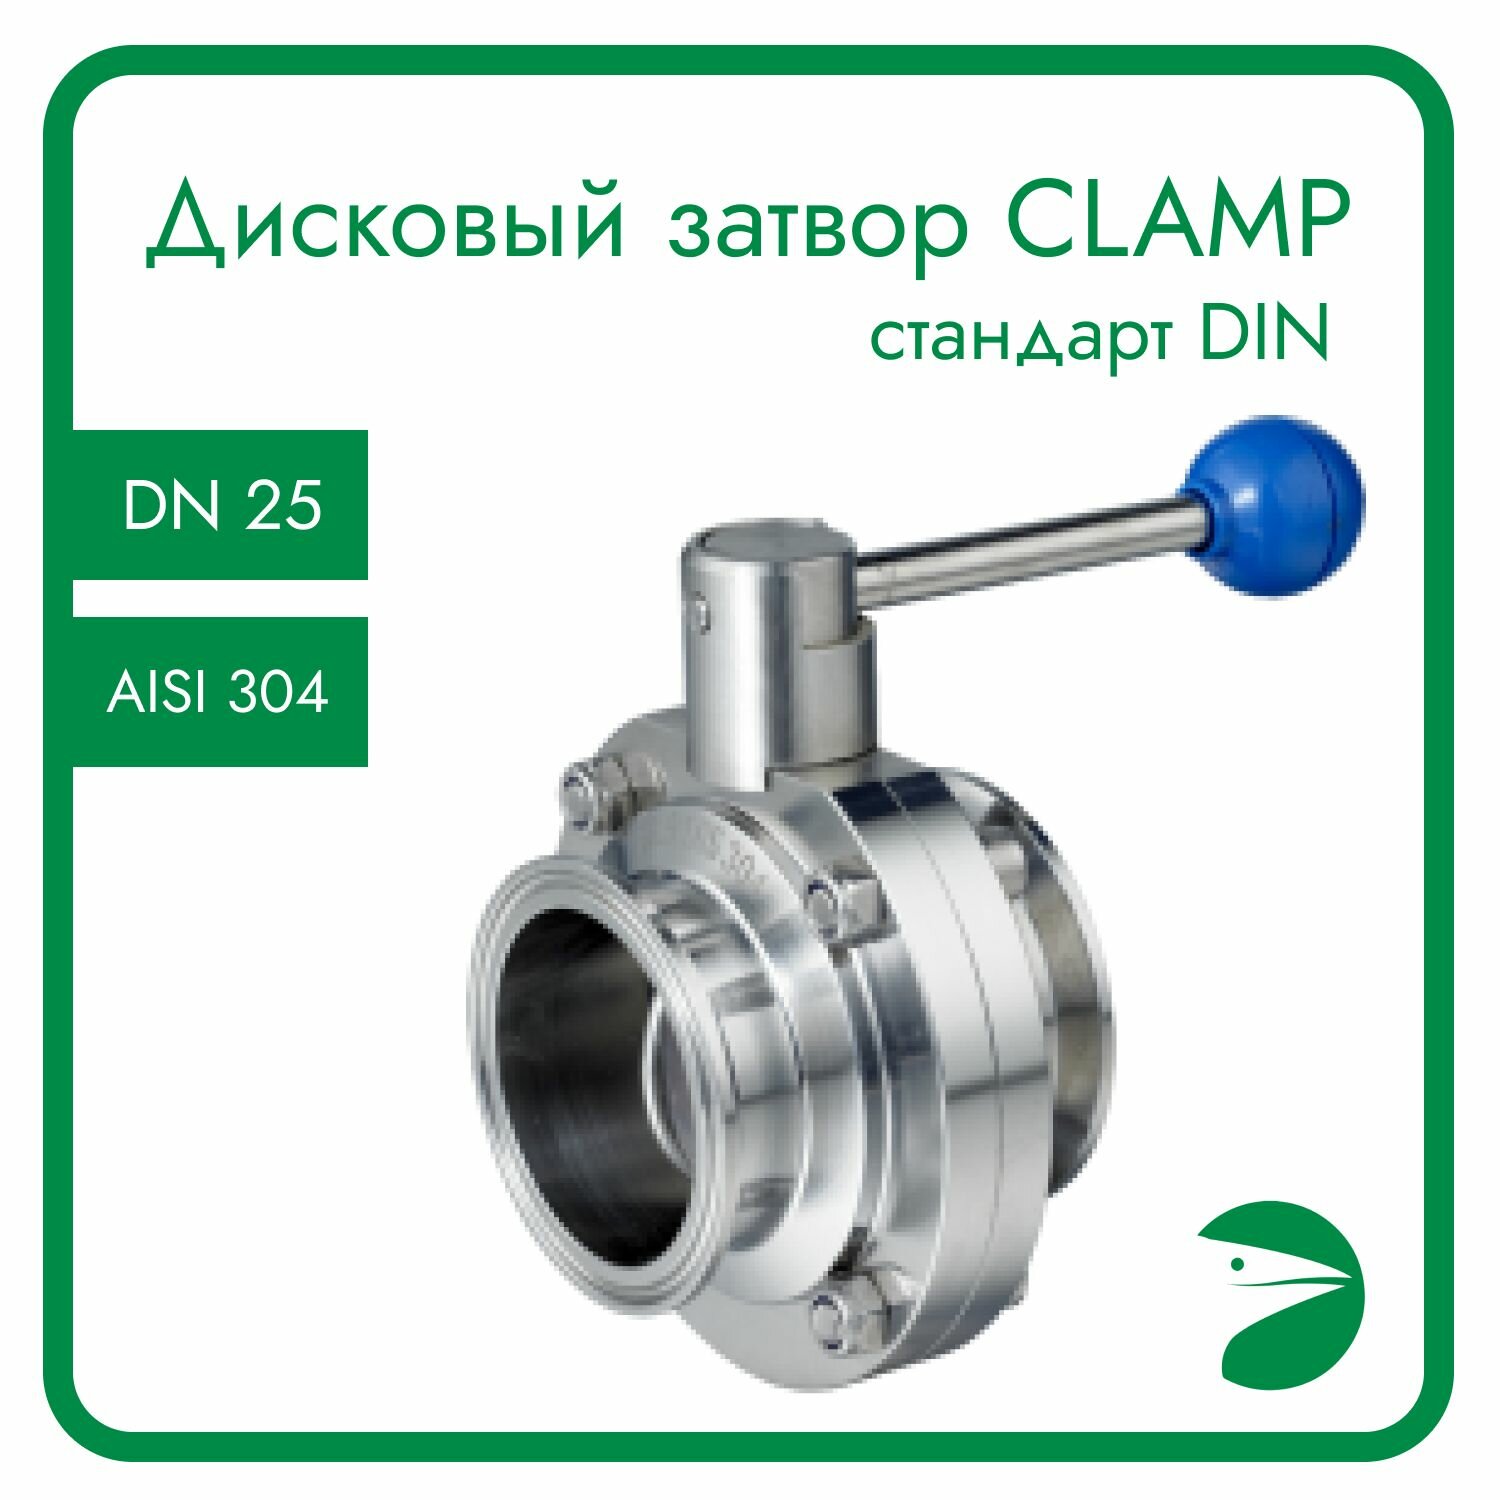 Затвор дисковый Clamp DIN нержавеющий EPDM AISI304 DN25 (1") (CF8) PN8